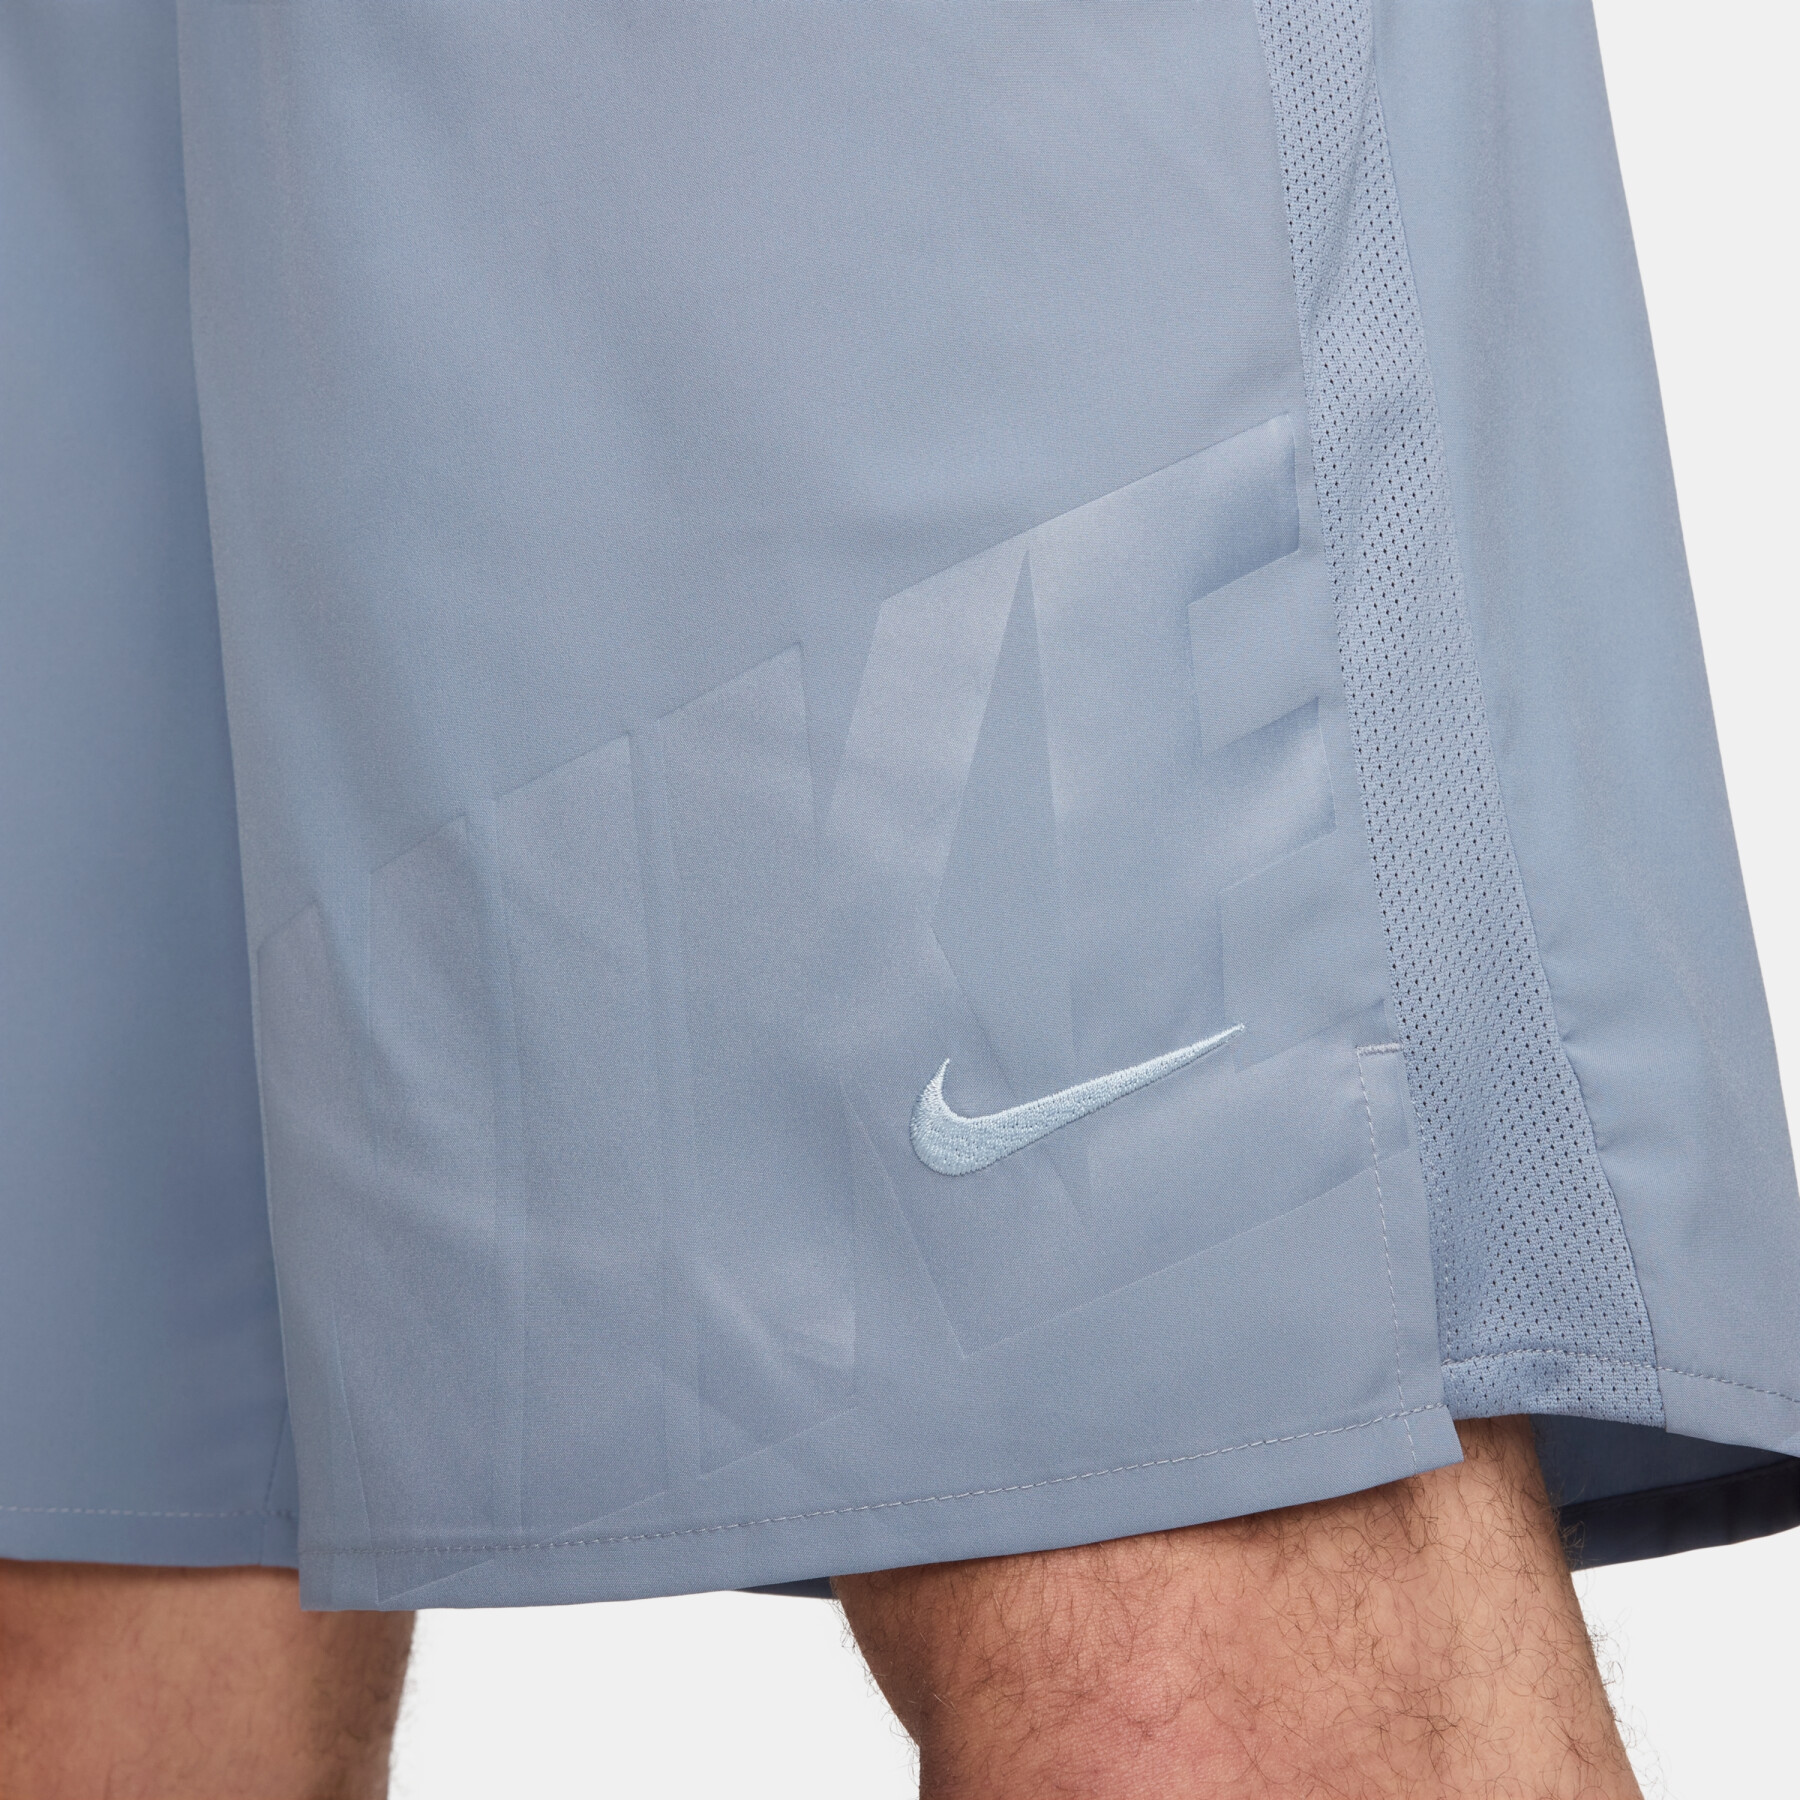 Fodera protettiva sotto il pantalone Nike Challenger Dri-FIT